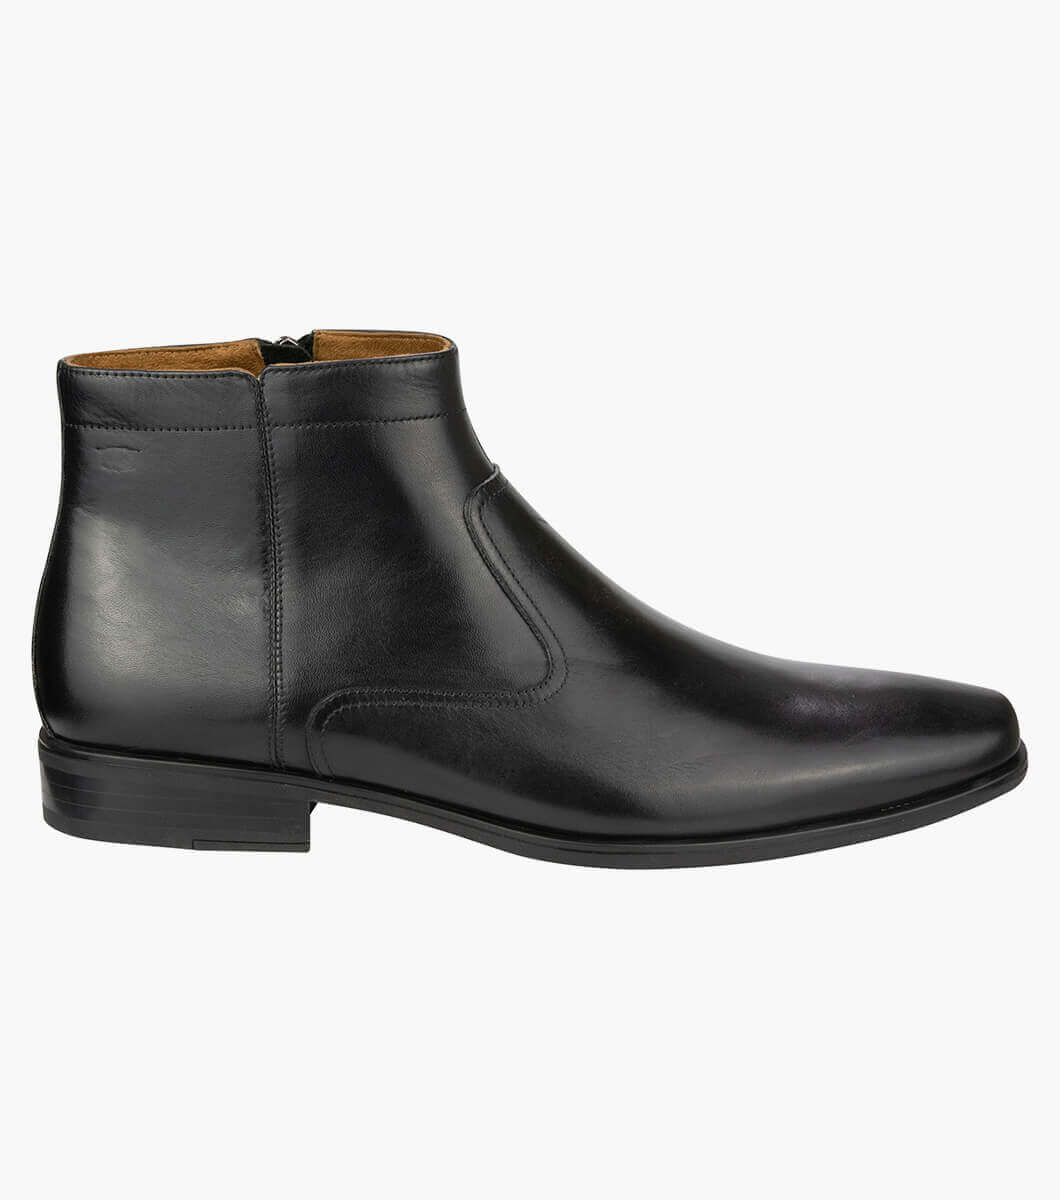 Jackson Zip Boot Plain Toe Zip Boot Men’s Boots | Florsheim.com